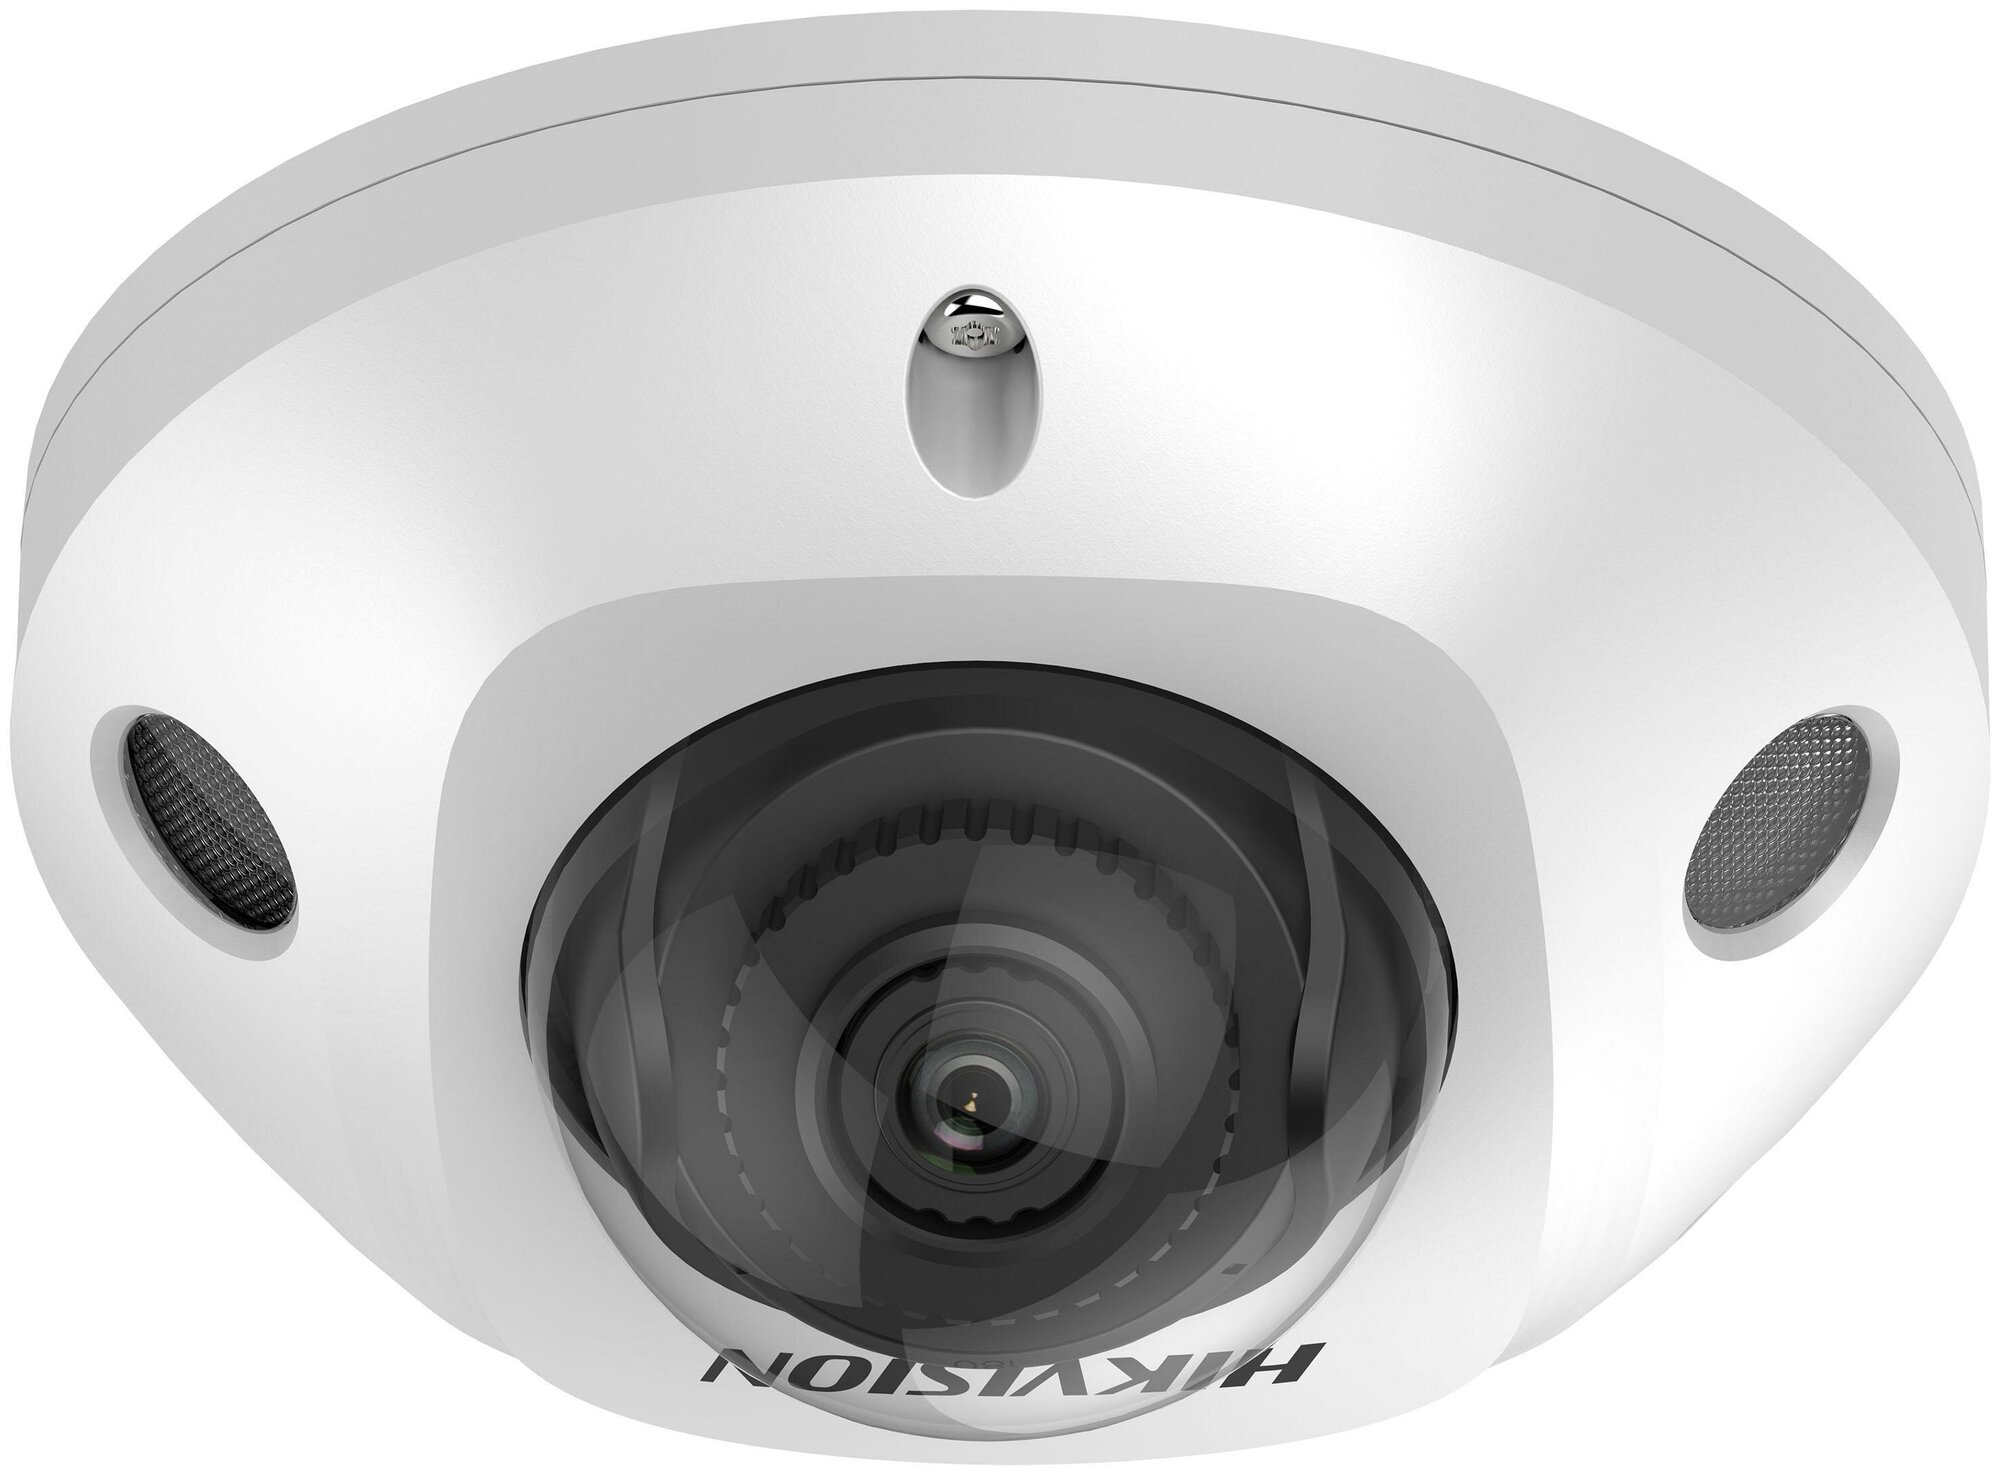 Камера видеонаблюдения IP Hikvision DS-2CD2543G2-IS(4mm), 1520p, 4 мм, белый